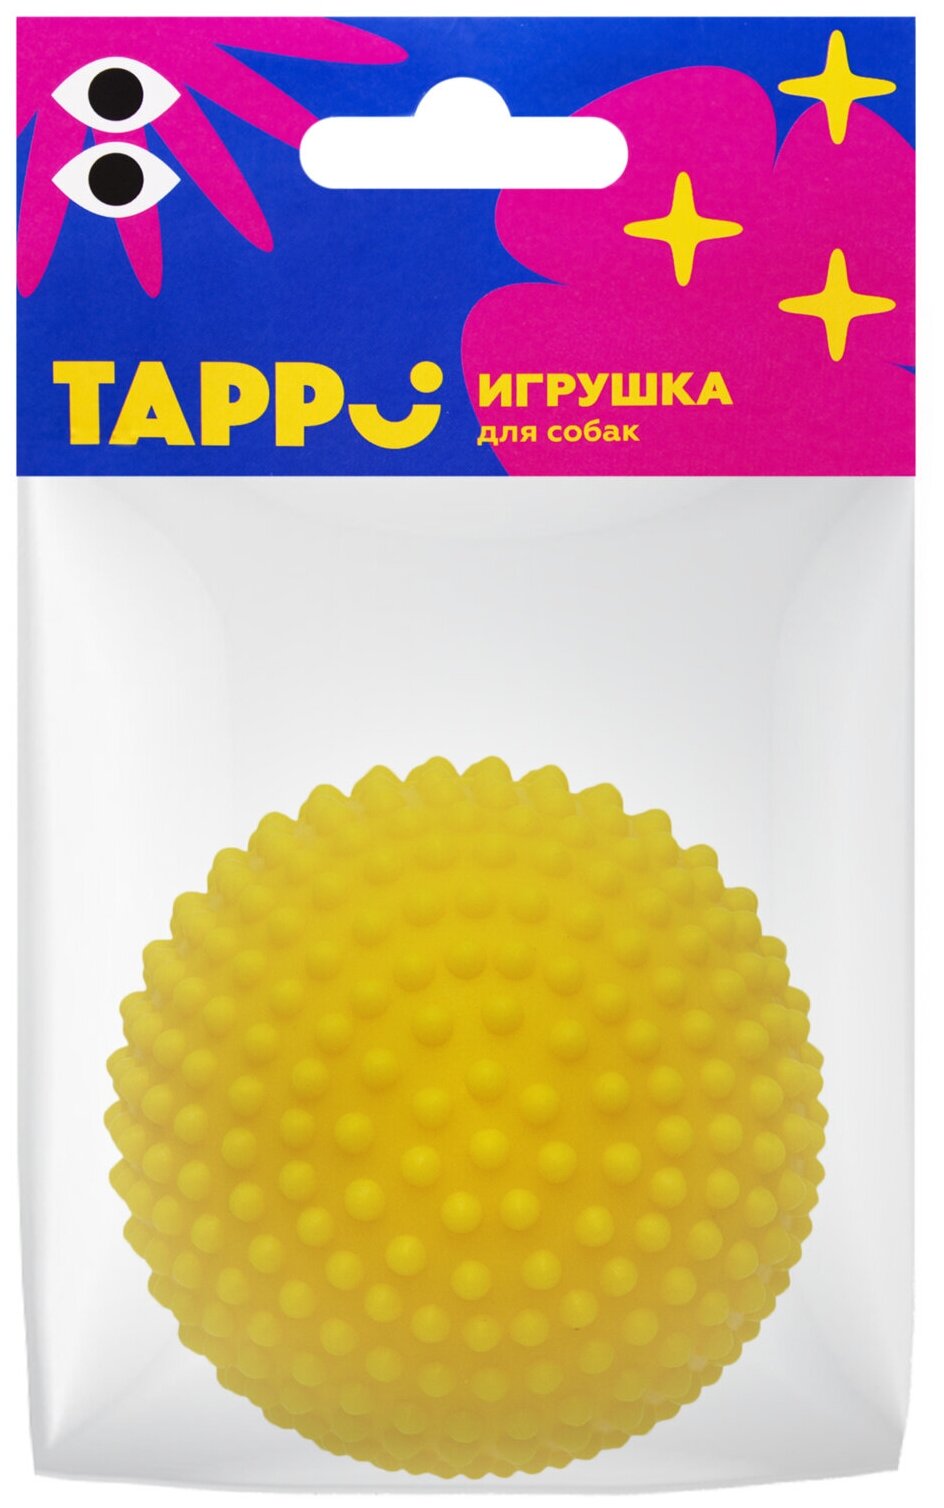 Tappi игрушка для собак "Вега", игольчатый мяч, жёлтый, диаметр 5,3 см - фотография № 2